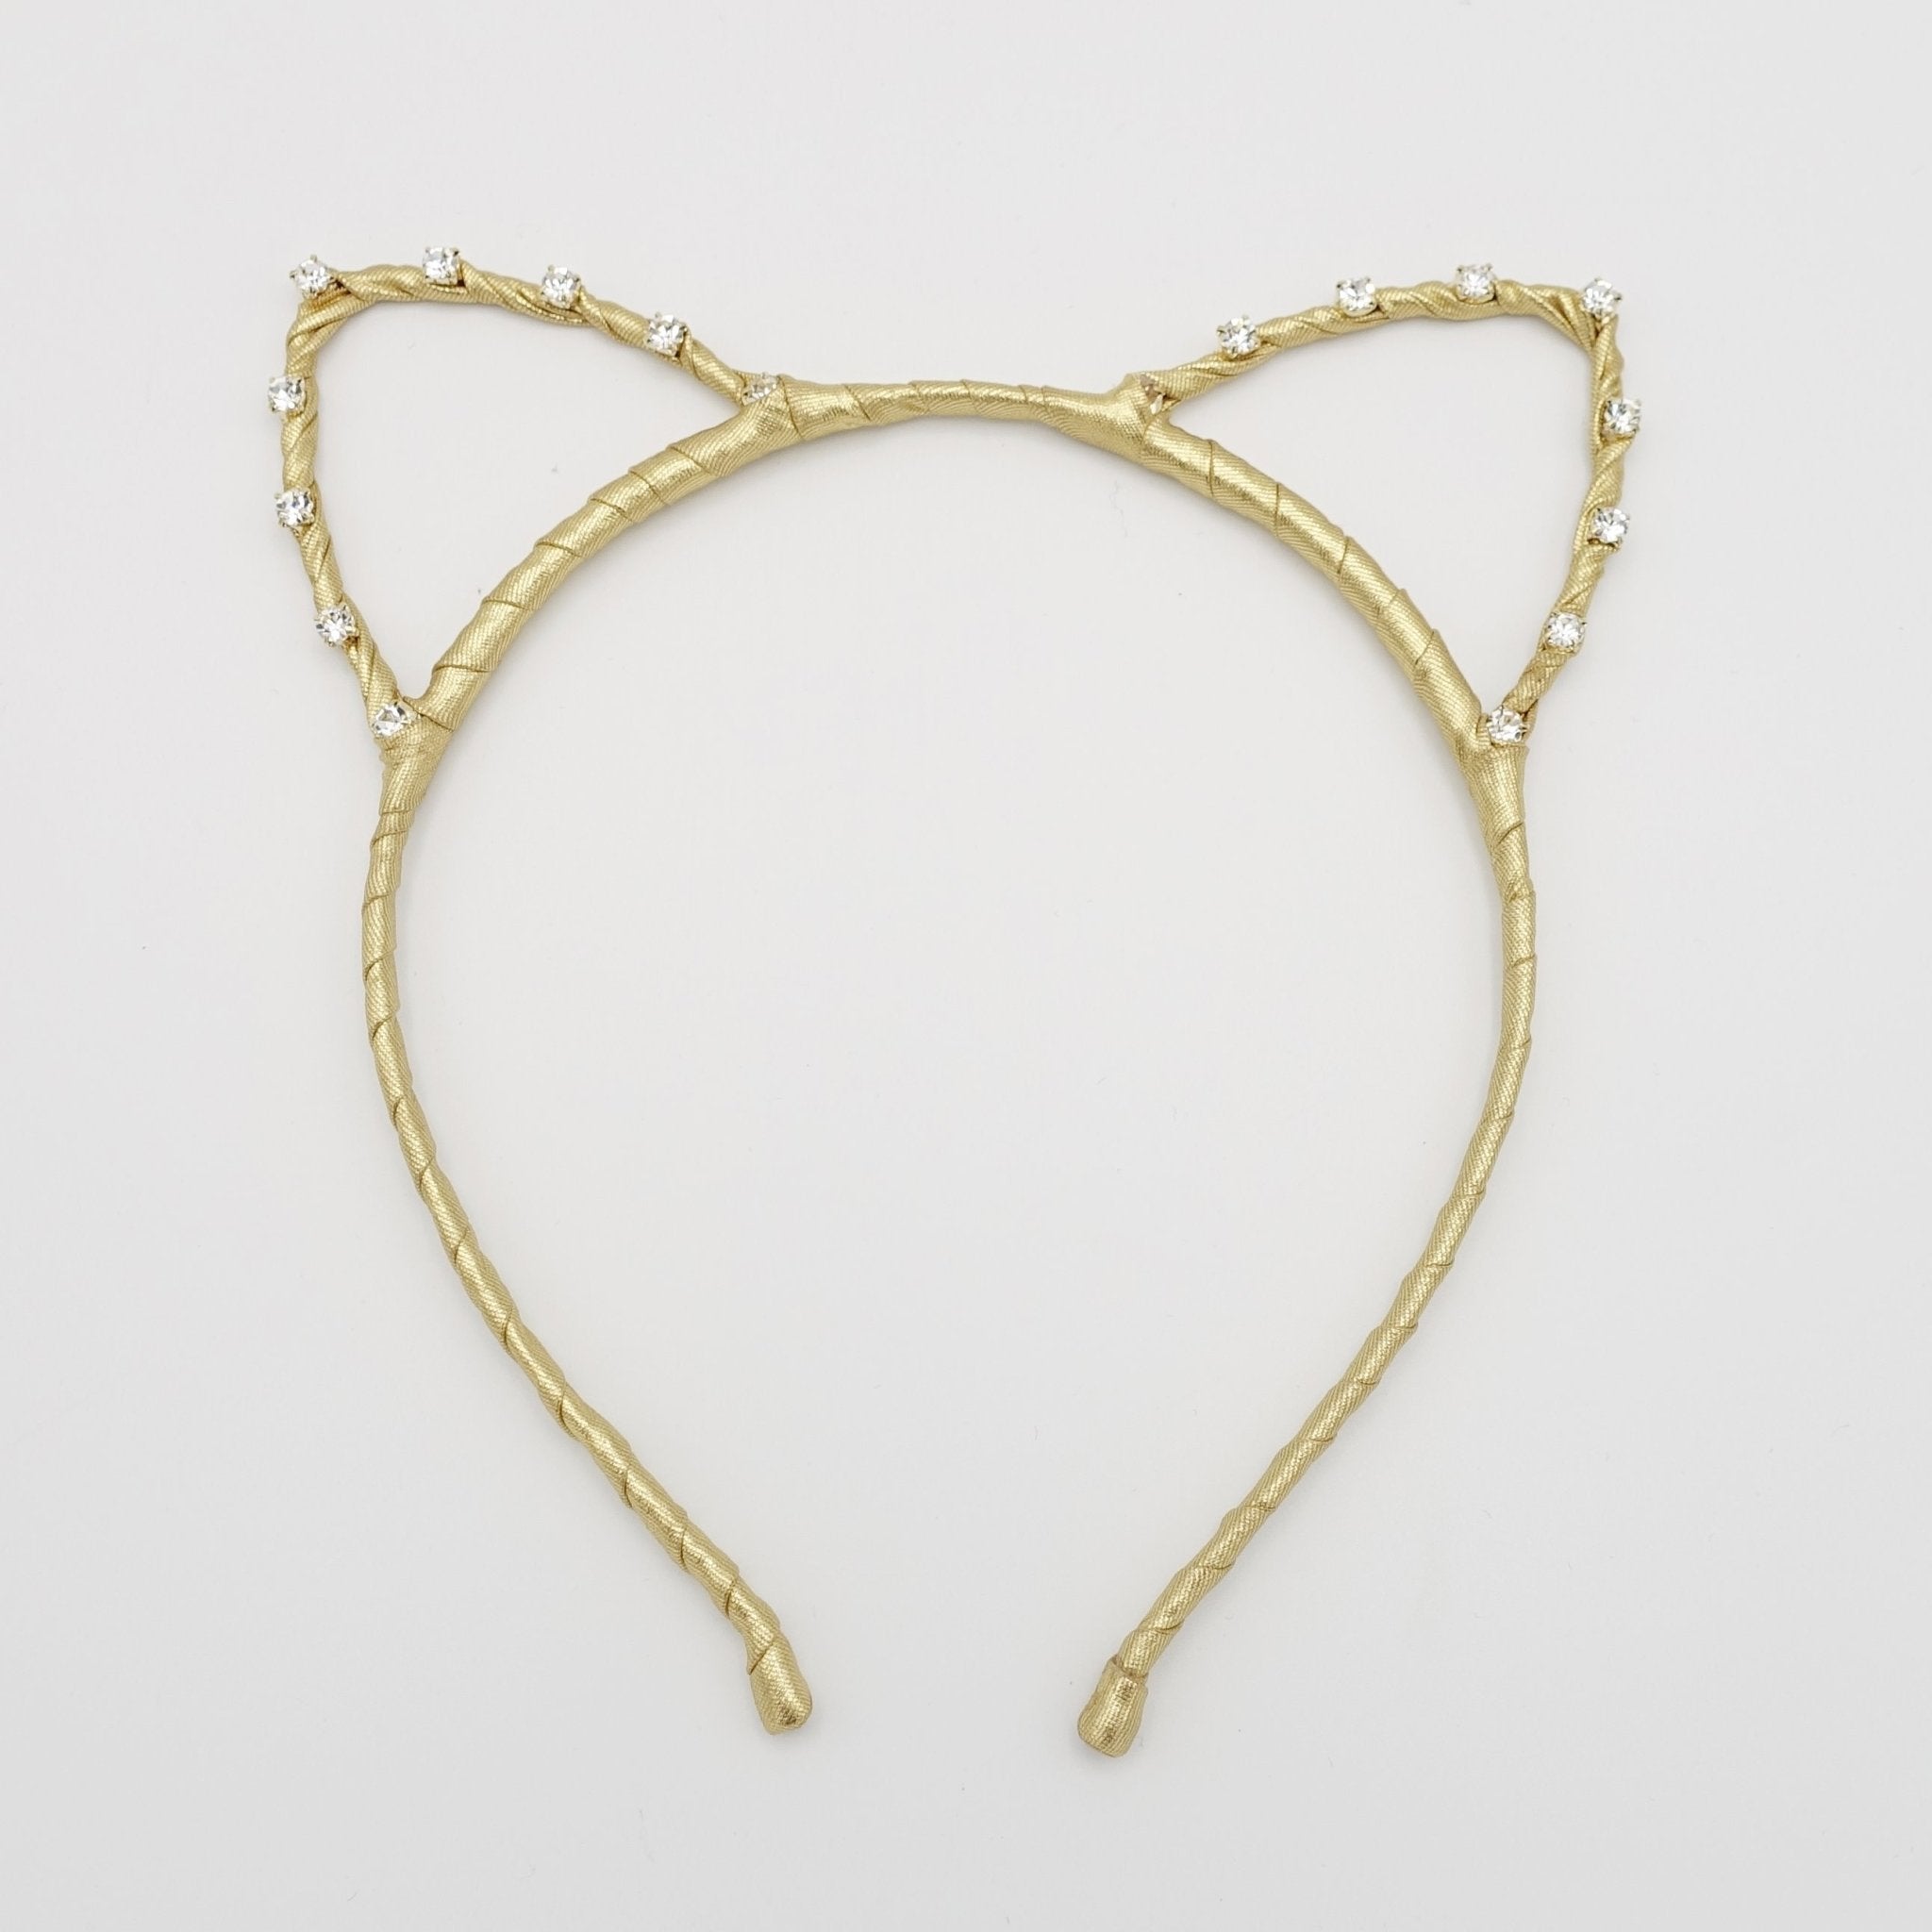 Embellished Rhinestone Rope Ribbon Headband Gold - Pack of 6